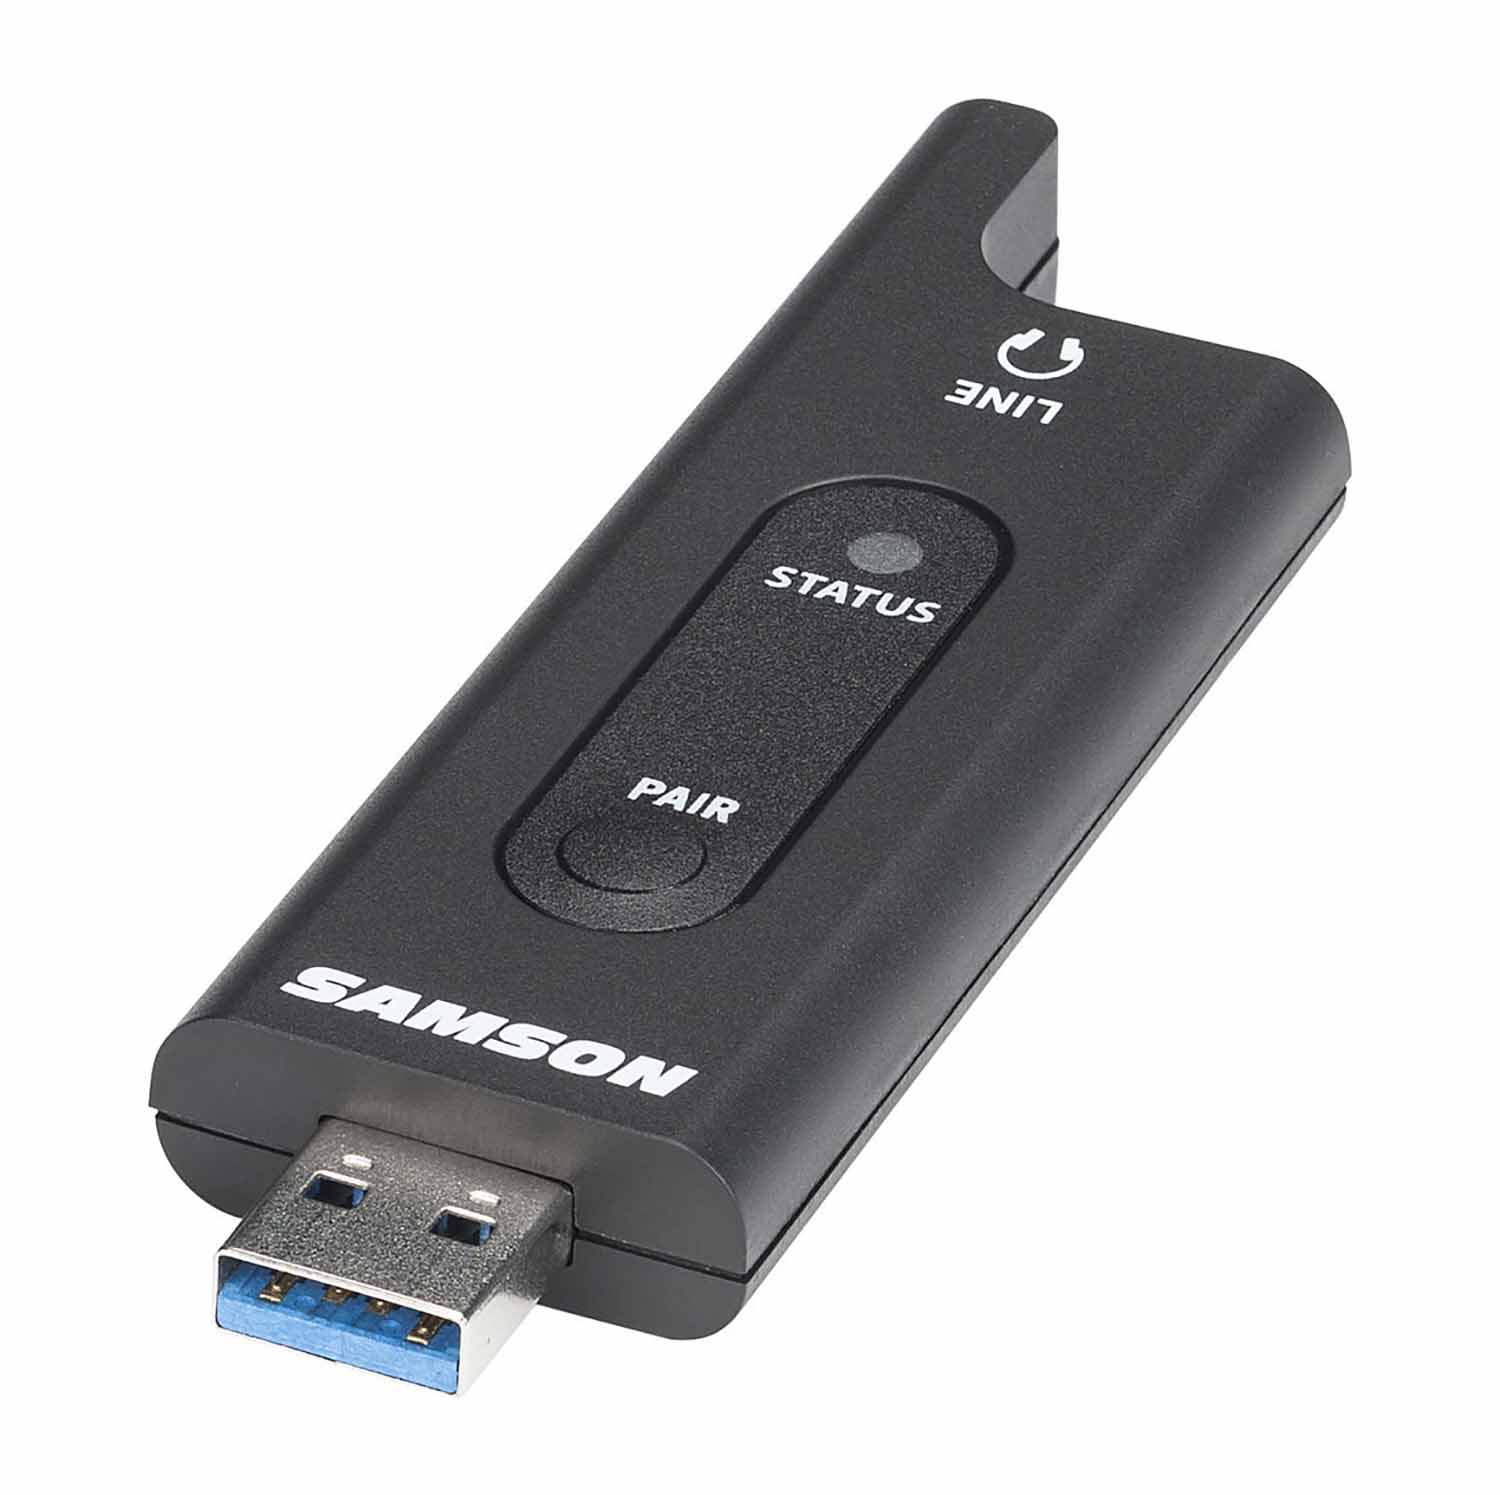 Samson SWRXD2USB, RXD2 Wireless USB Receiver - Hollywood DJ